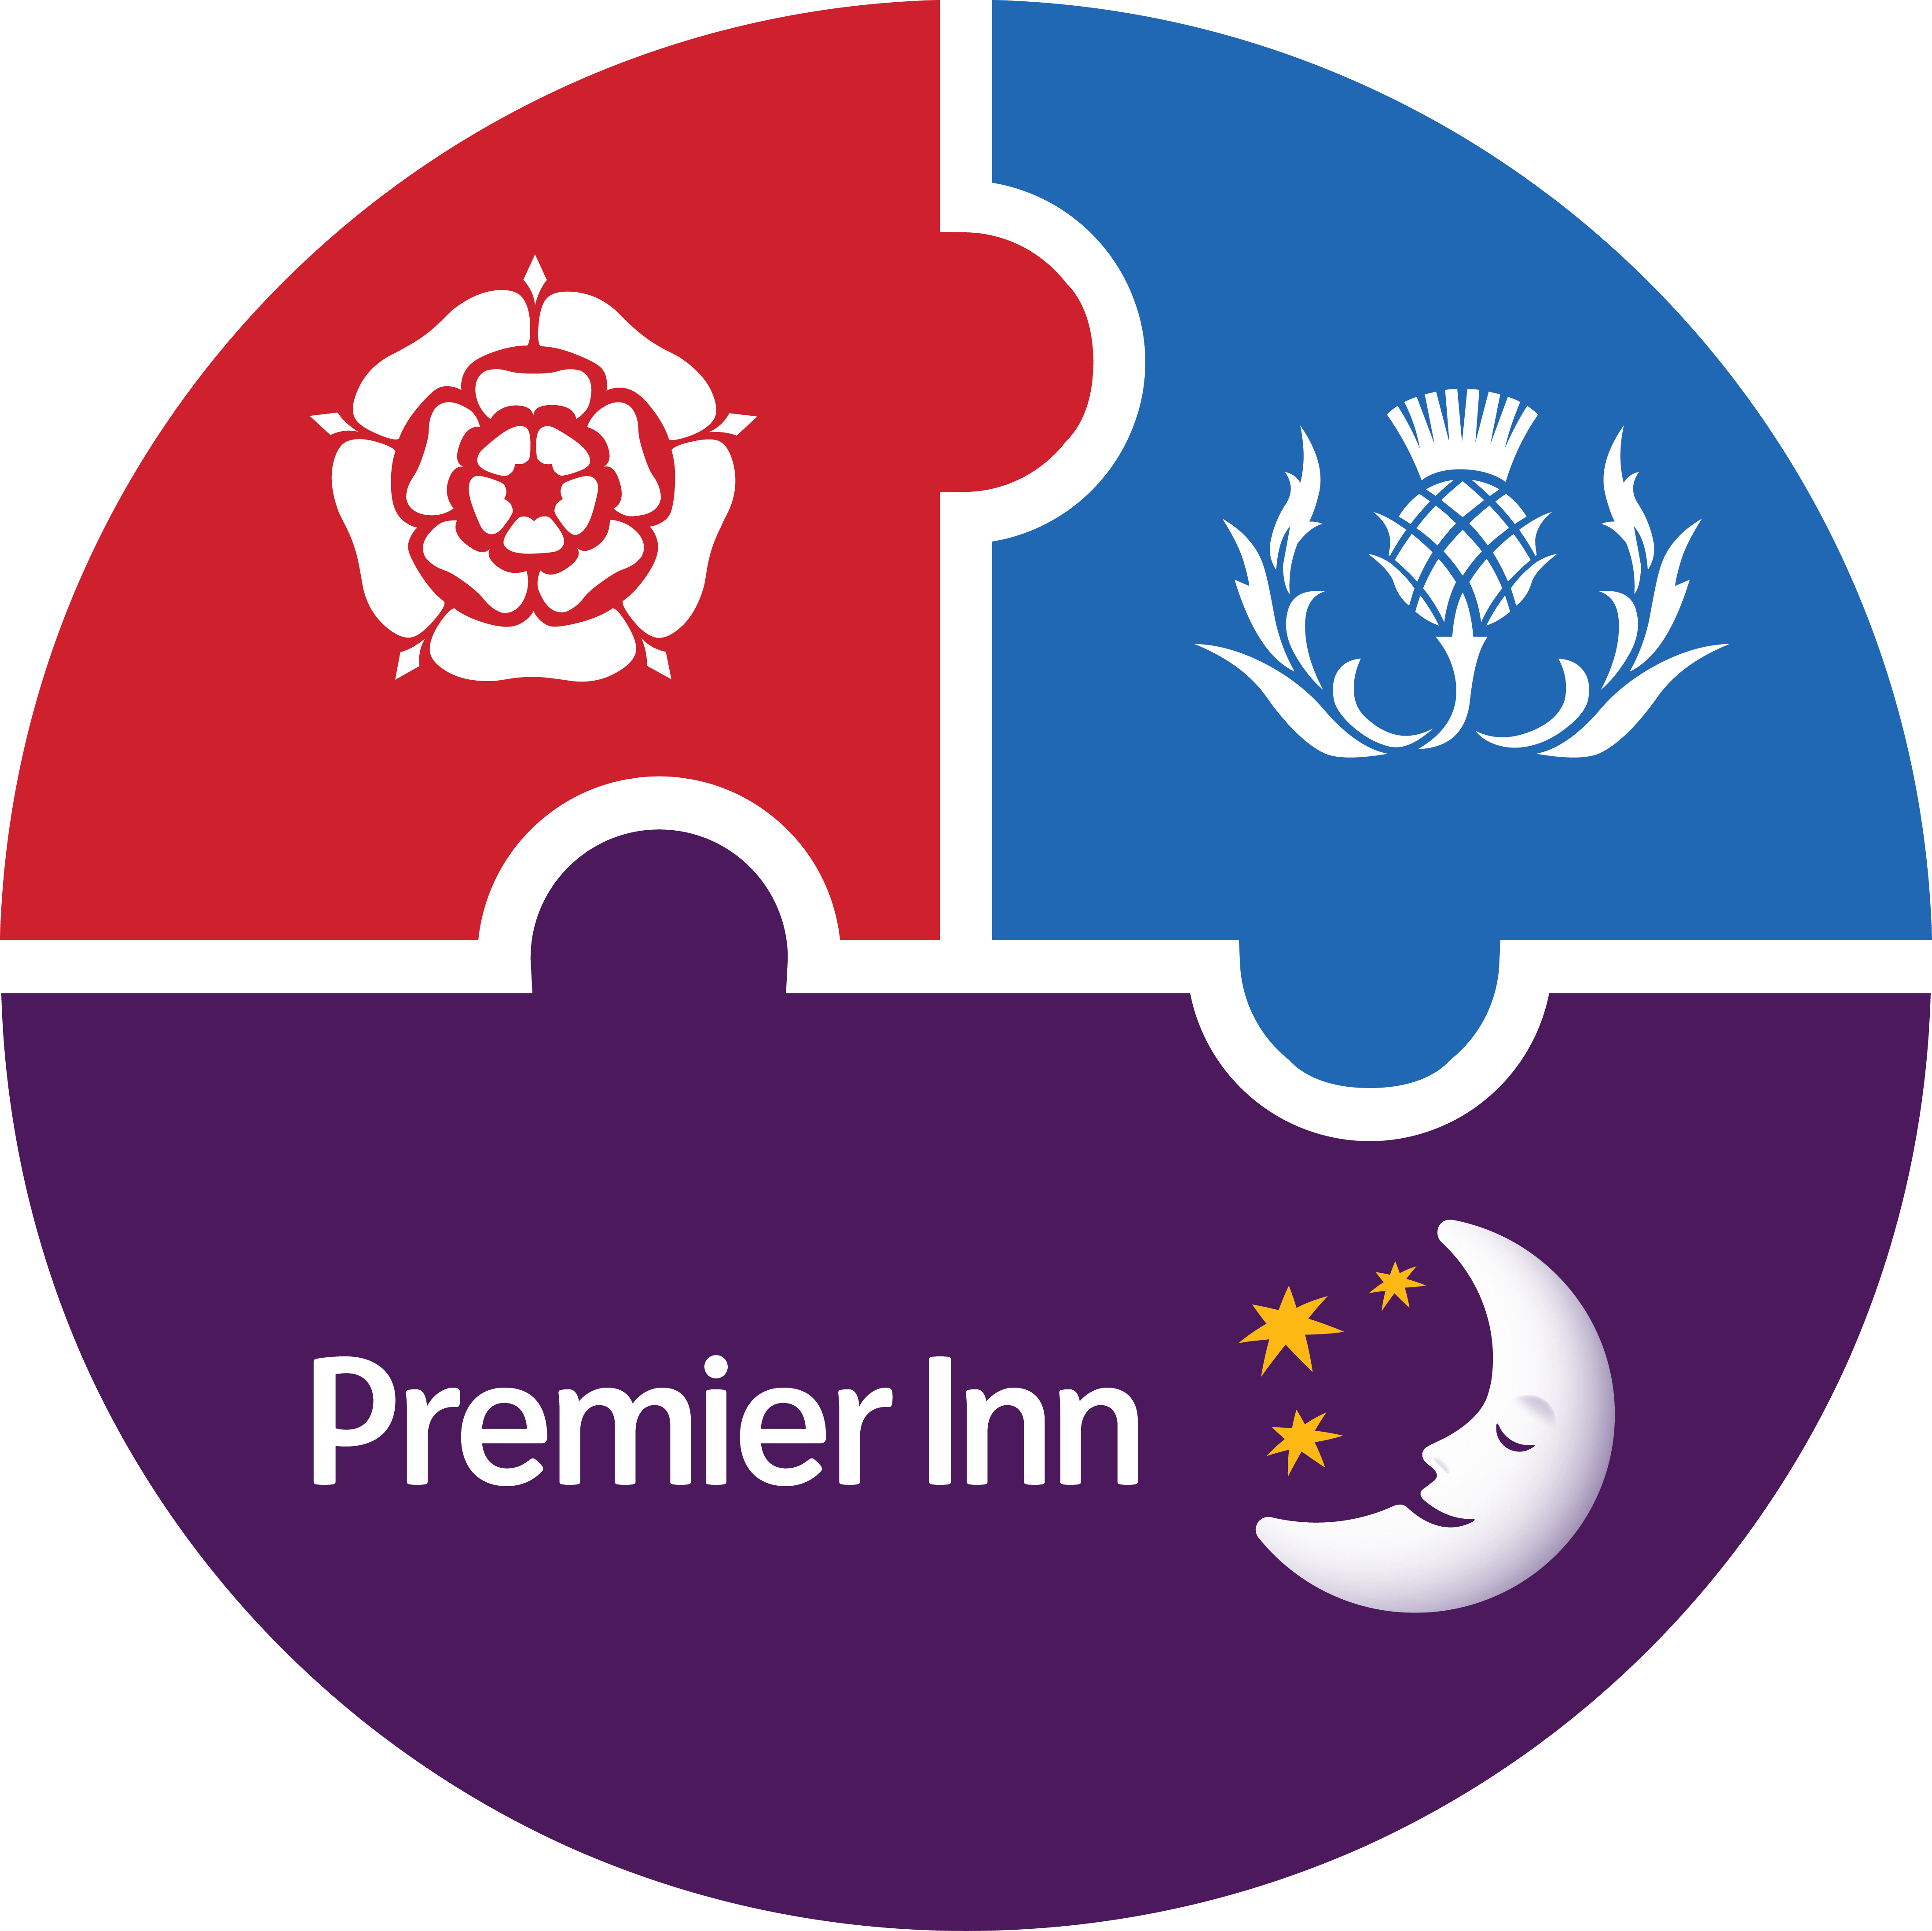 Premier Inn Brand Standards